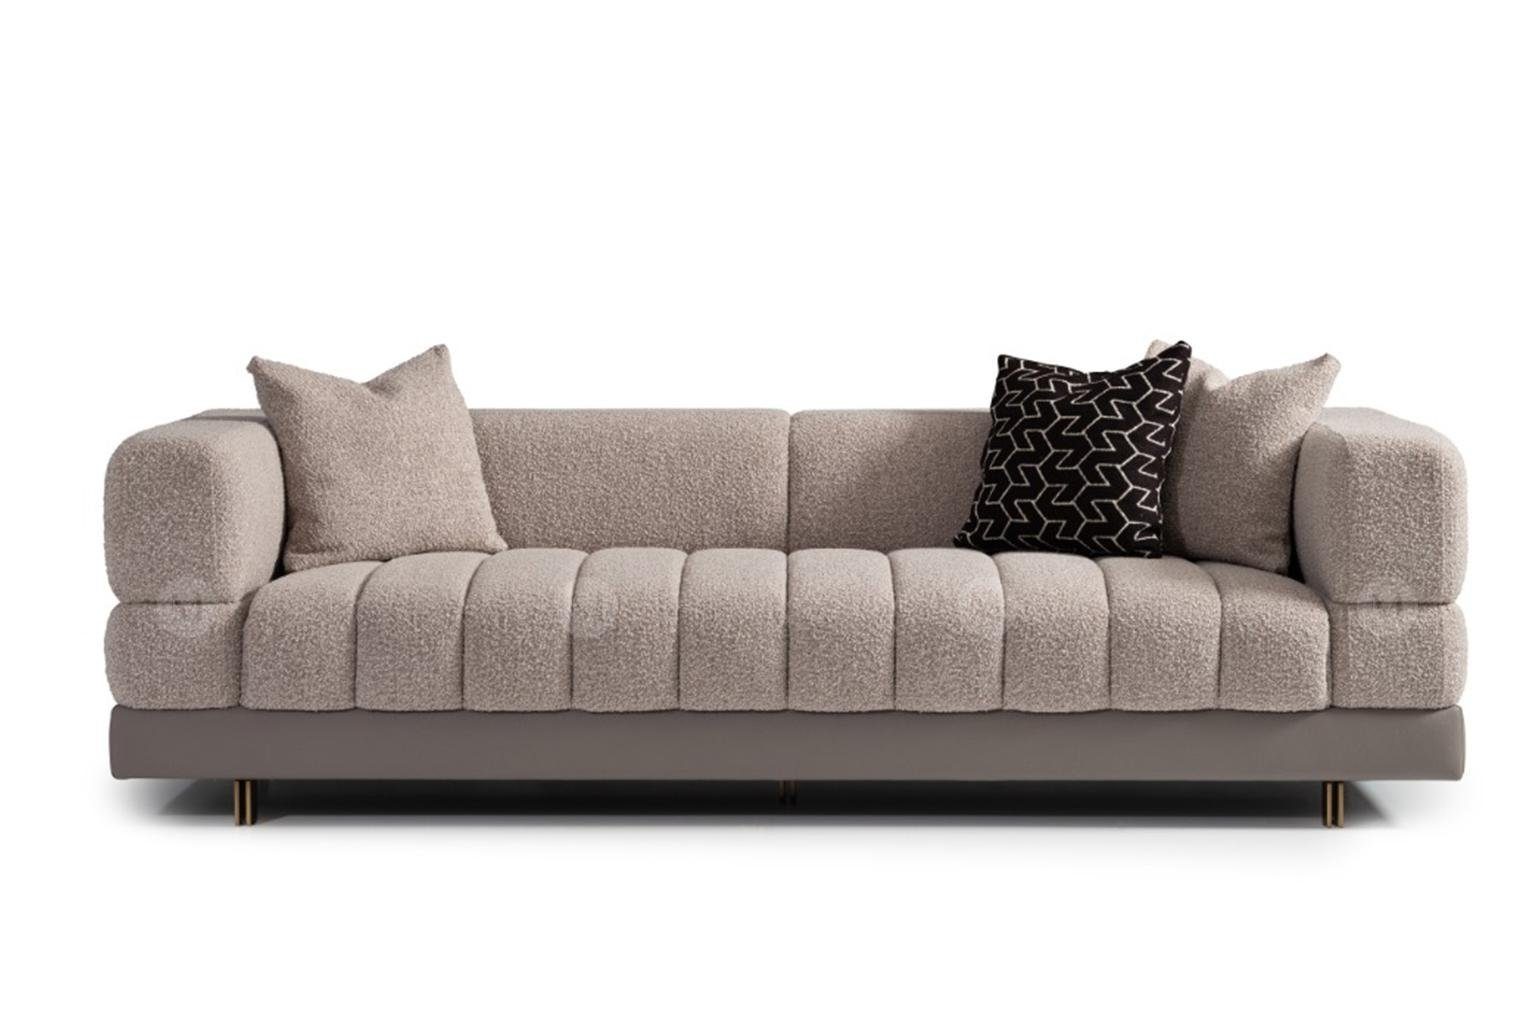 JVmoebel 3-Sitzer Grau Dreisitzer Couch Sofa 3 Sitzer Polstersofa Moderne, 1 Teile, Made in Europa